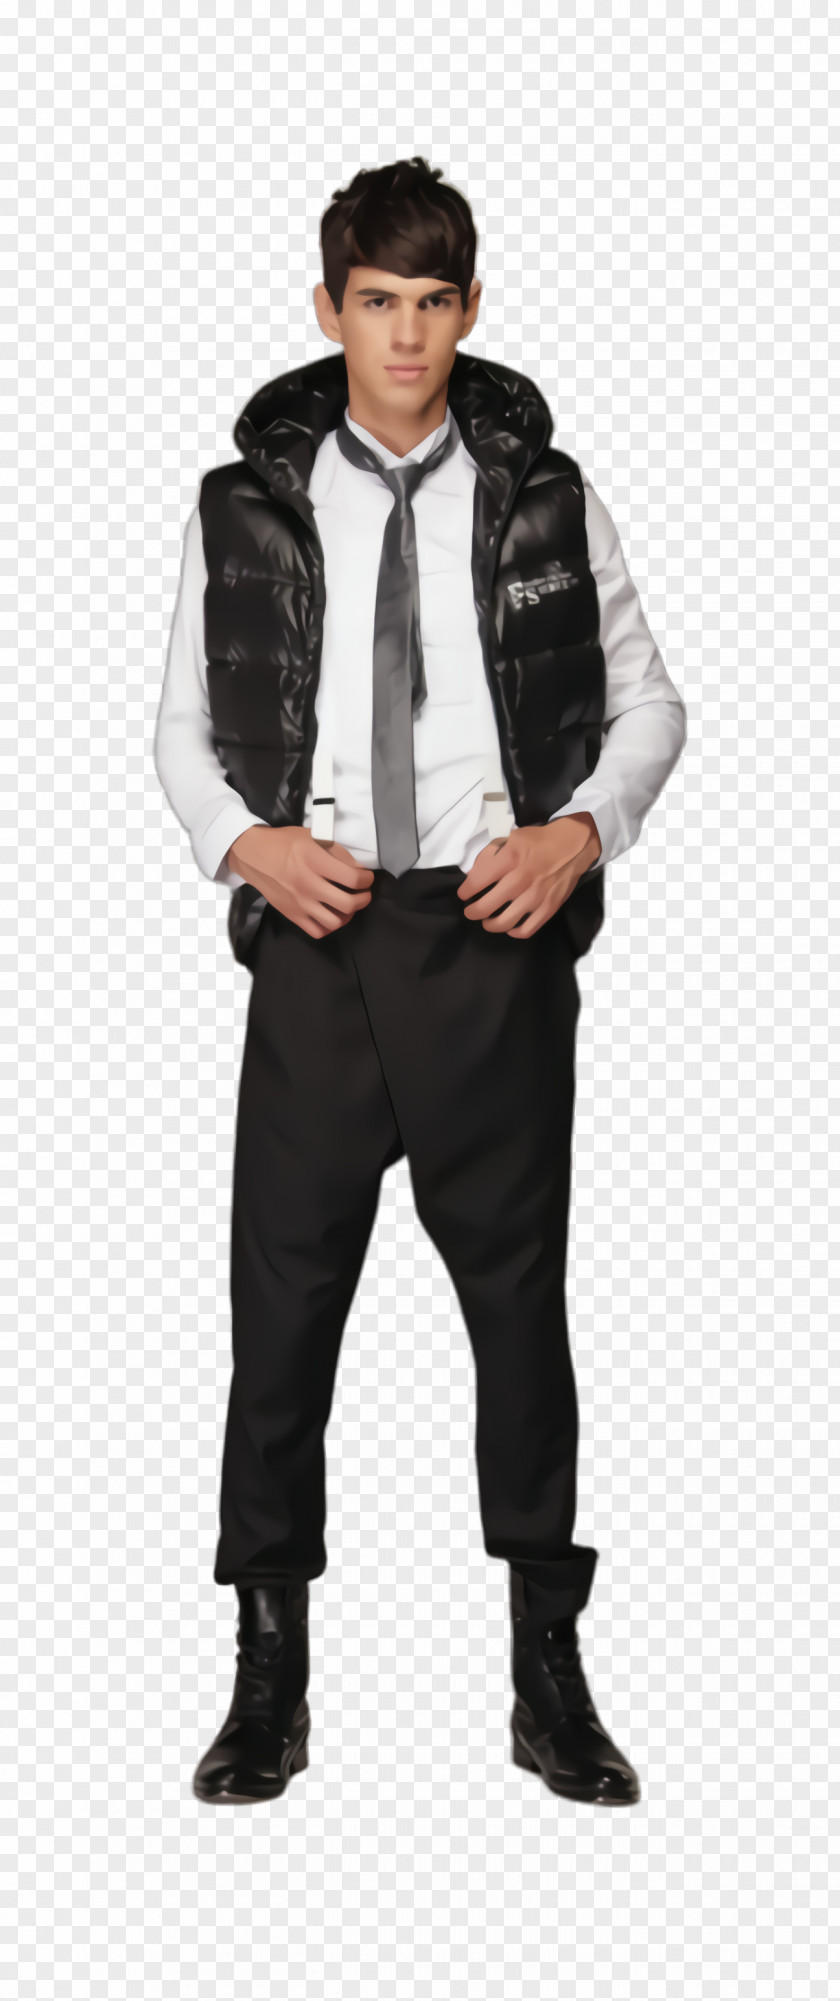 Vest Suit Clothing Outerwear Jacket Fur Hood PNG